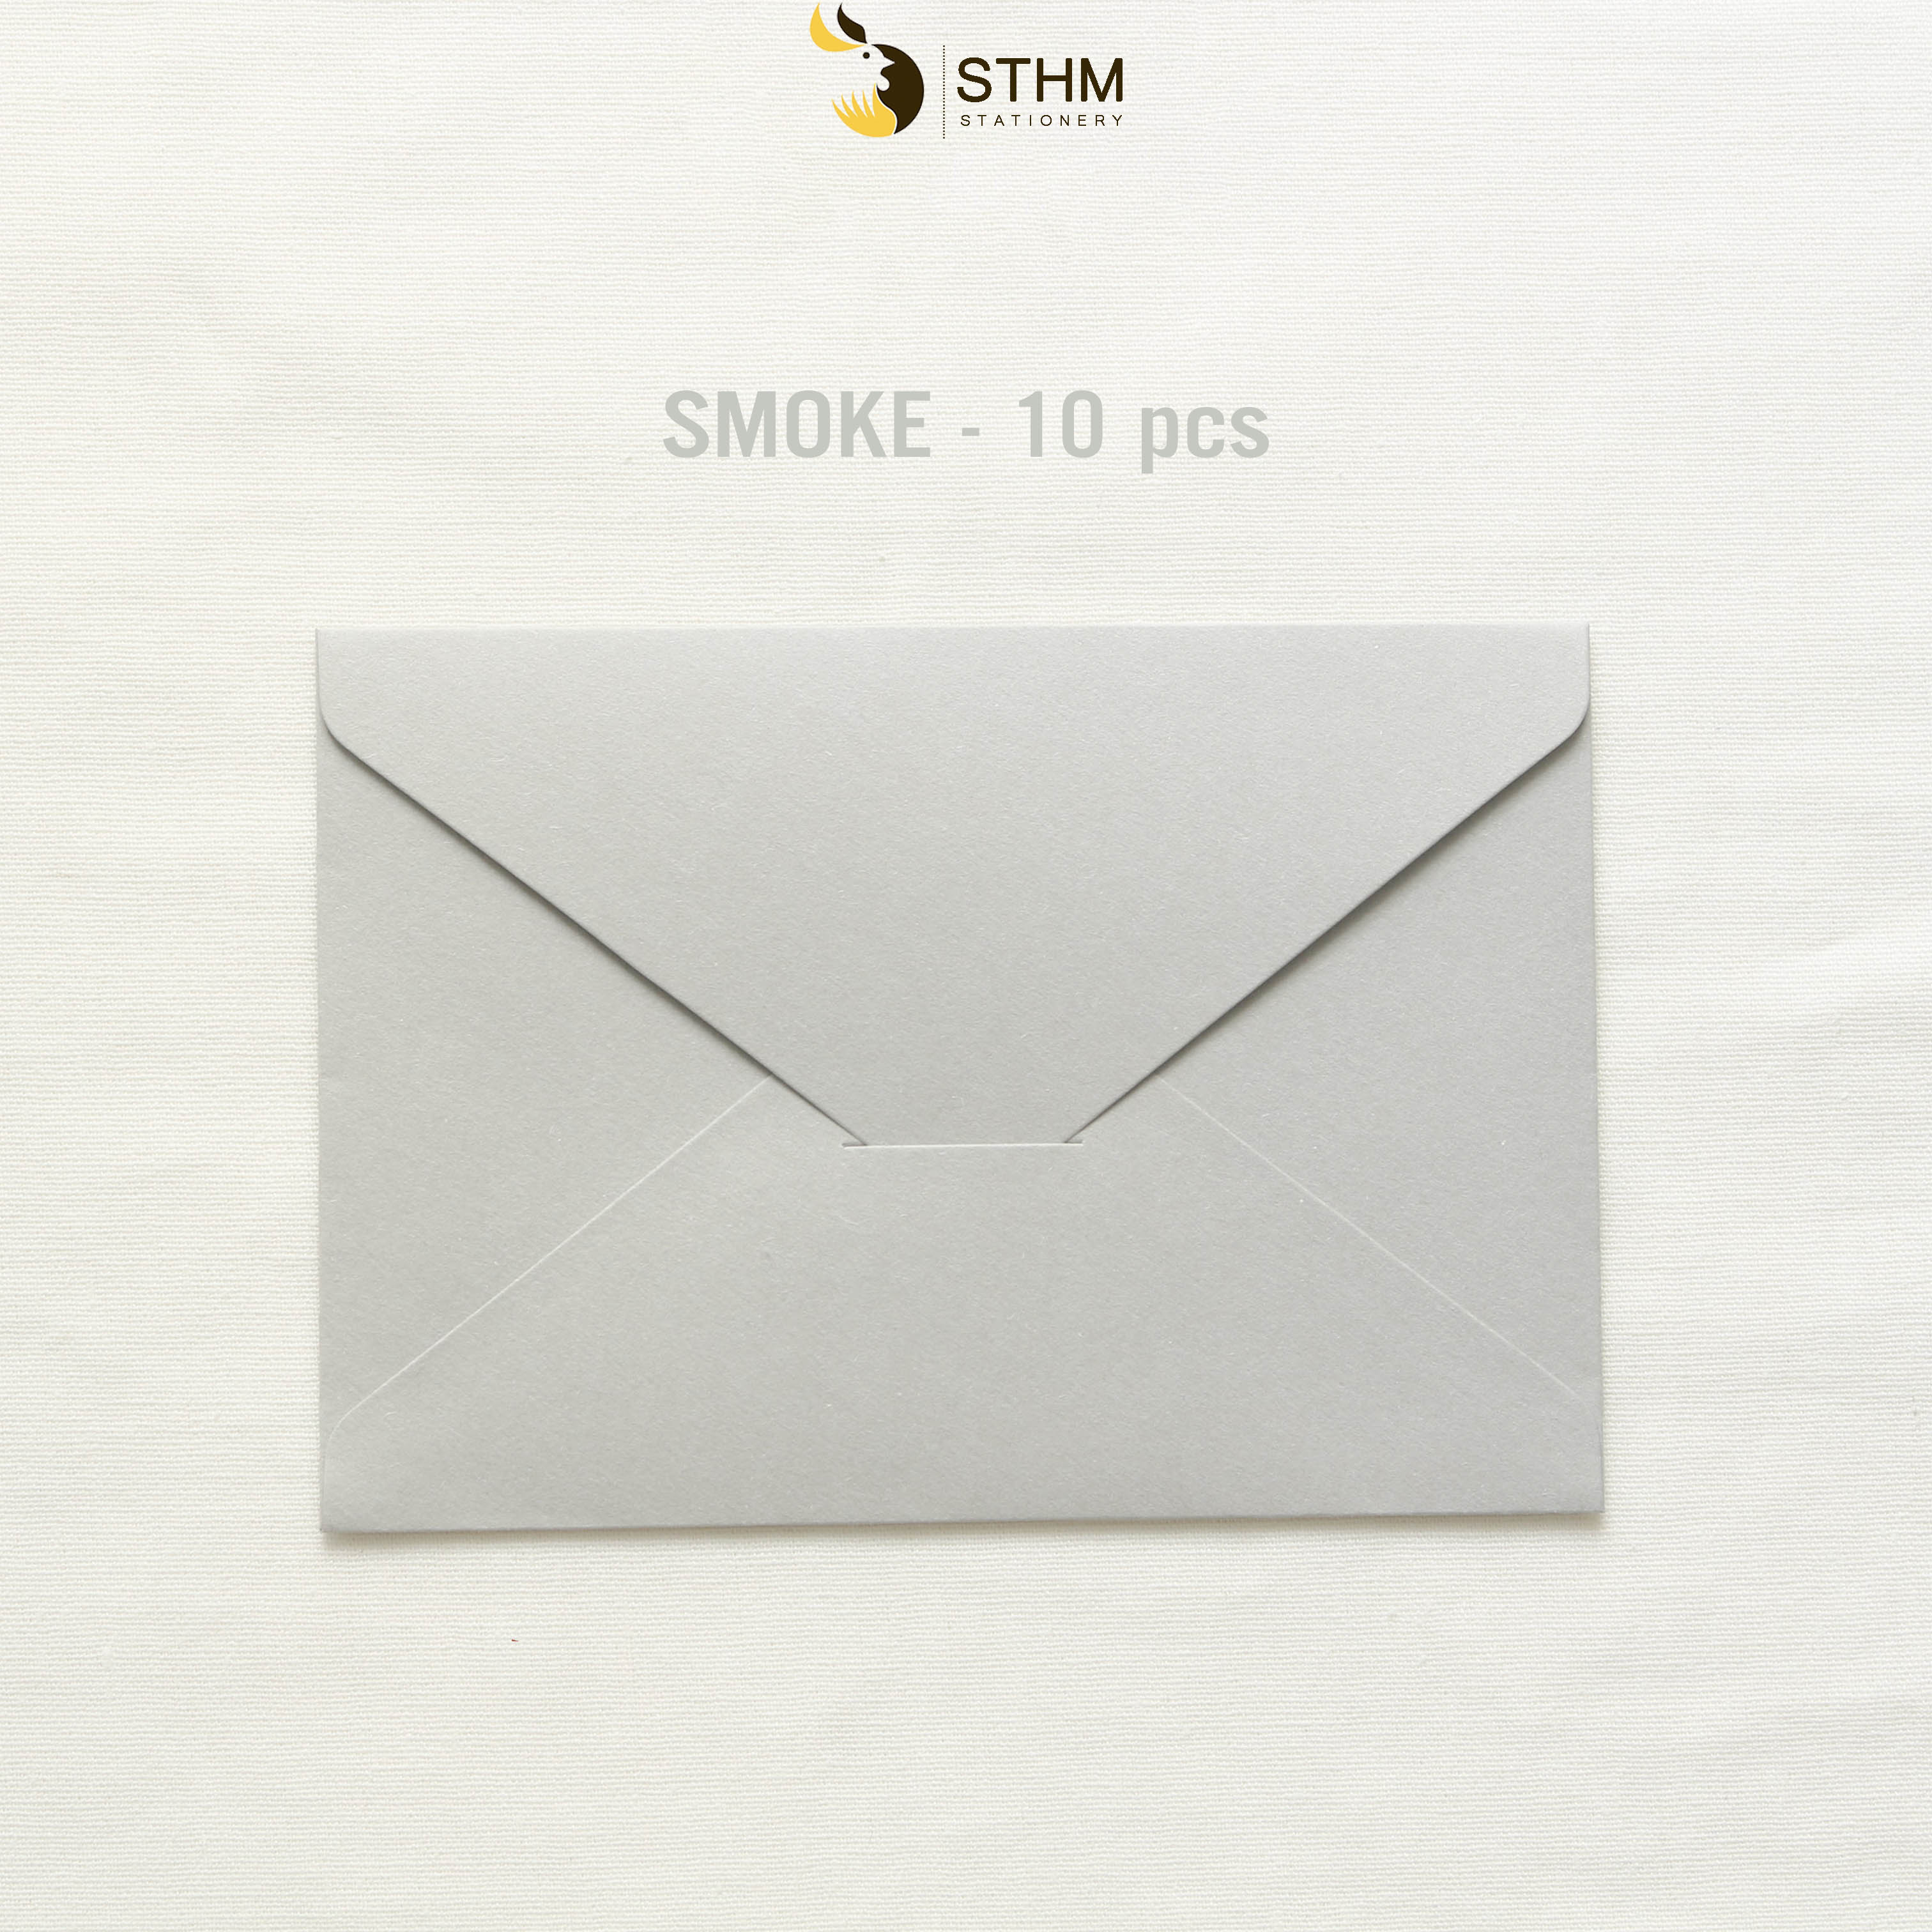 10 bao thư cao cấp - giấy mỹ thuật nhám- 11x16cm - STHM stationery